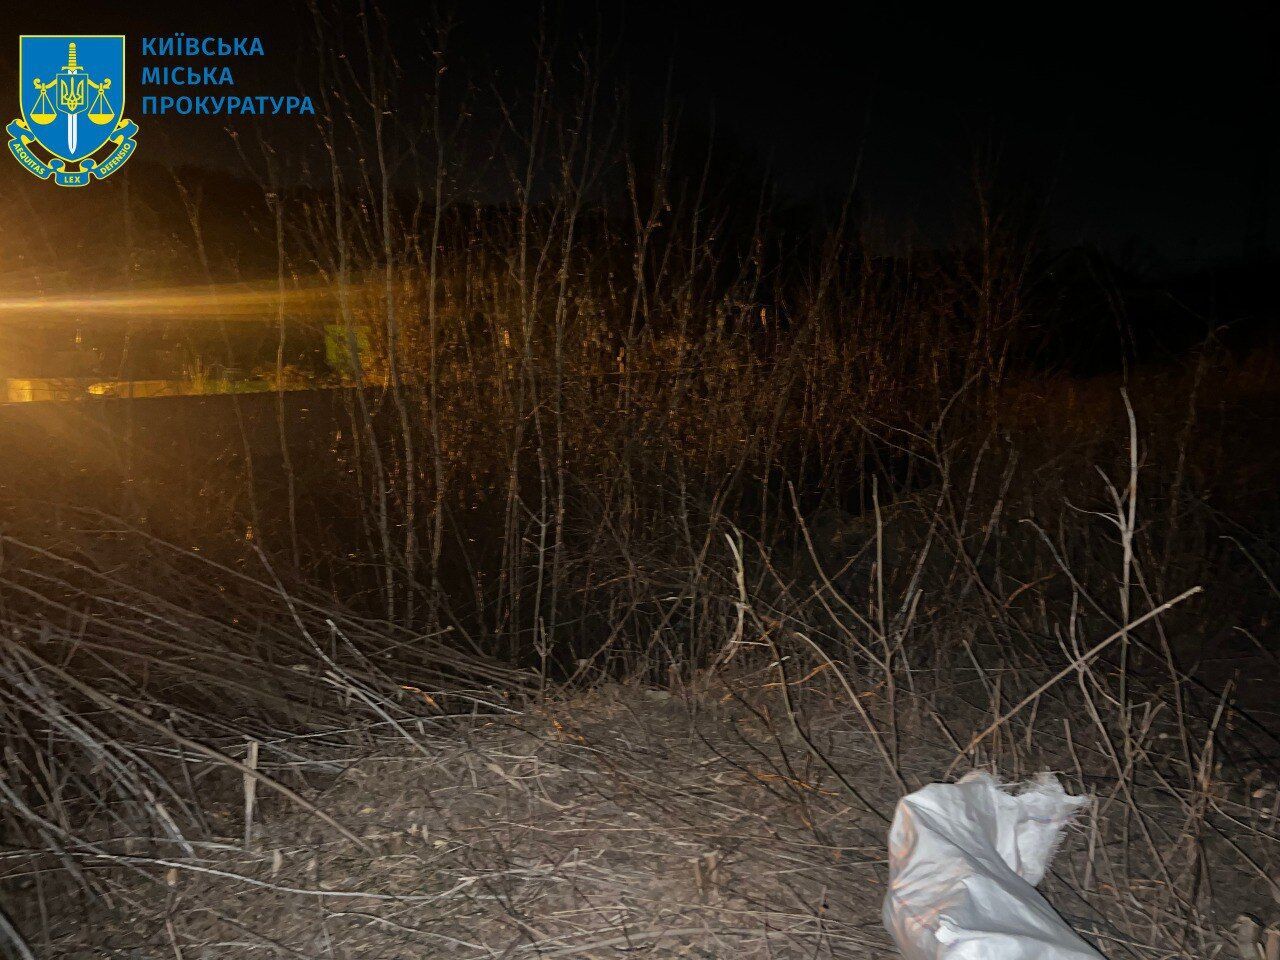 В Киеве работник частной ритуальной службы выбросил на пустырь урны с прахом умерших. Подробности дела